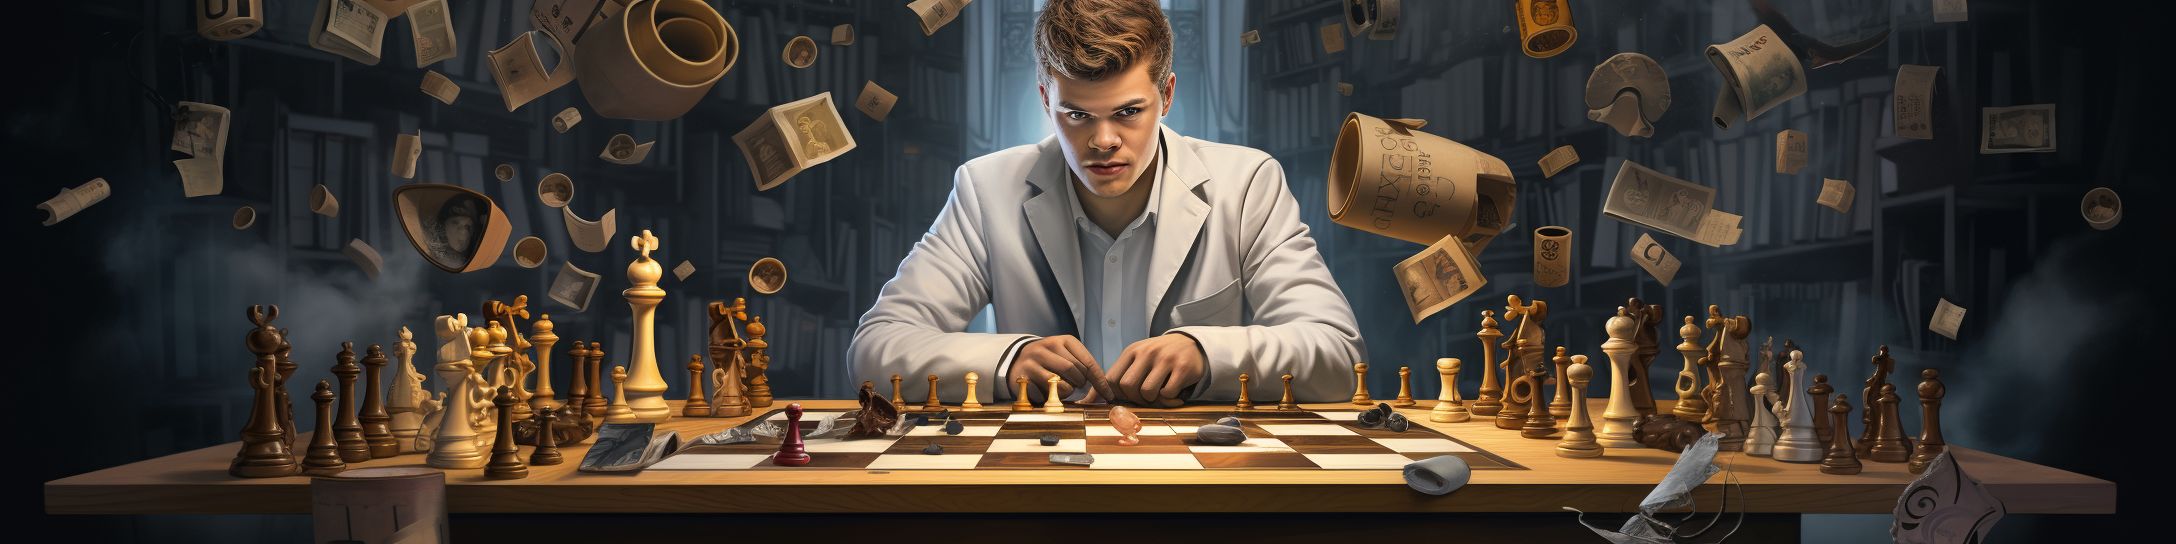 La contribution de Magnus Carlsen à la communauté échiquéenne.